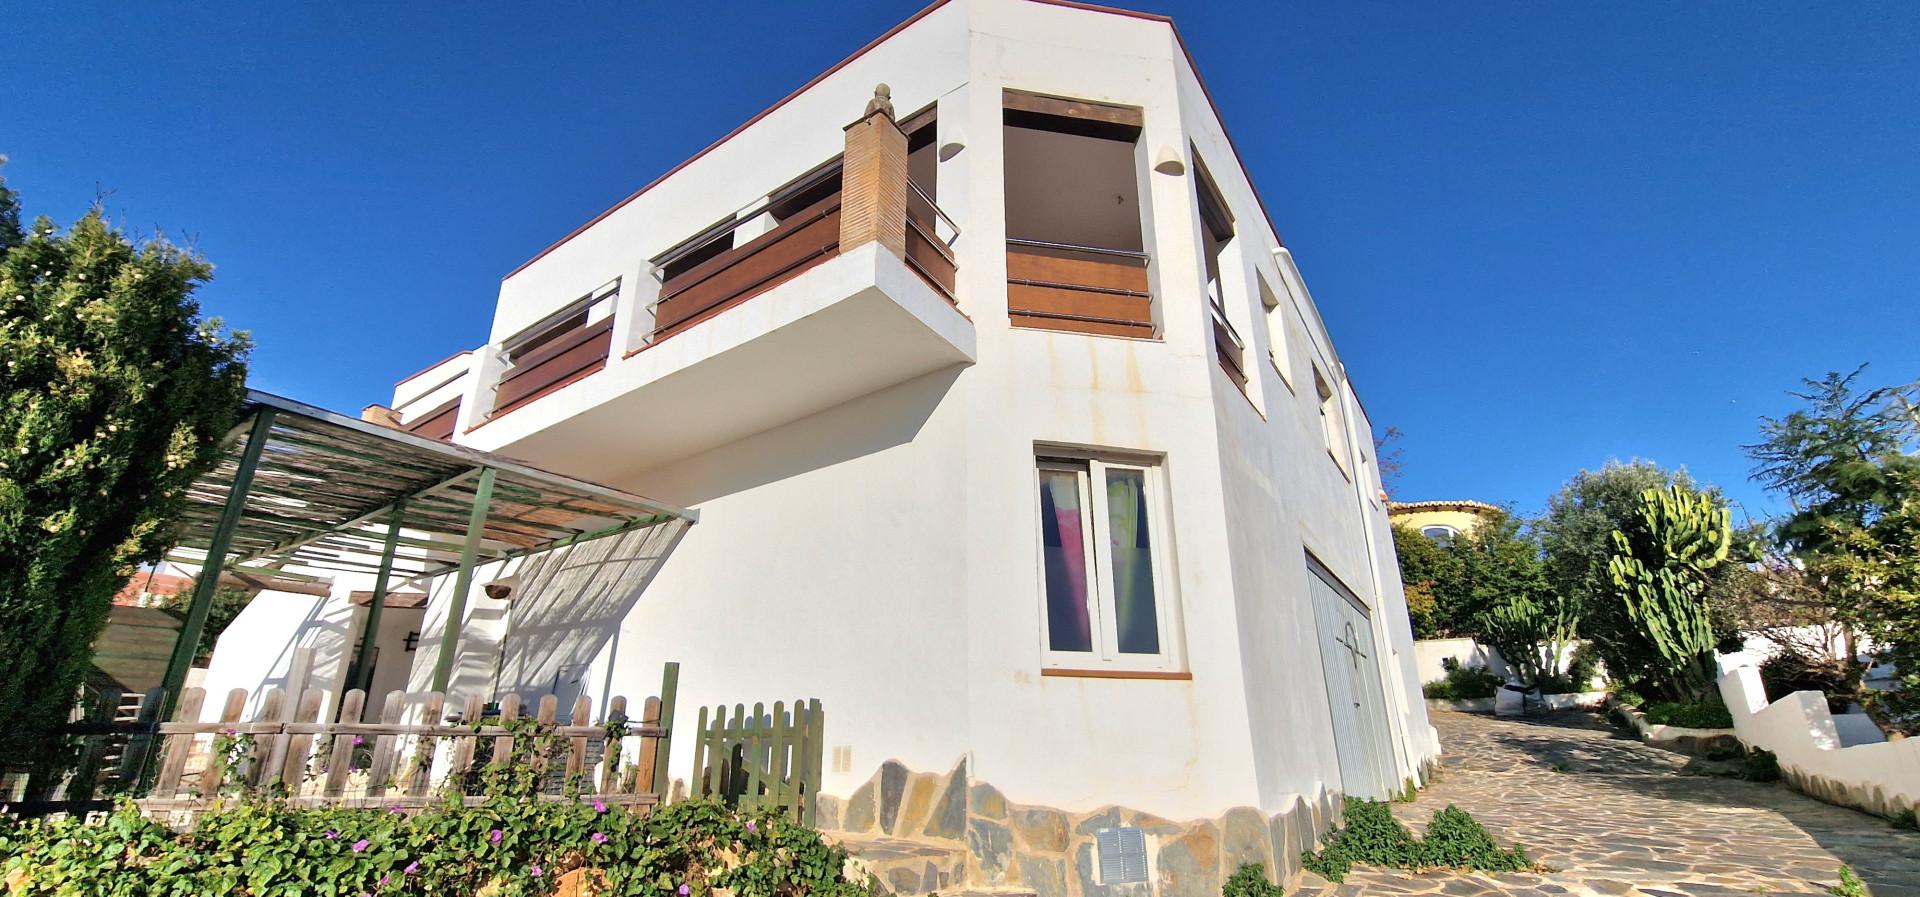 Villa de style Ibiza à vendre à Cumbre del Sol